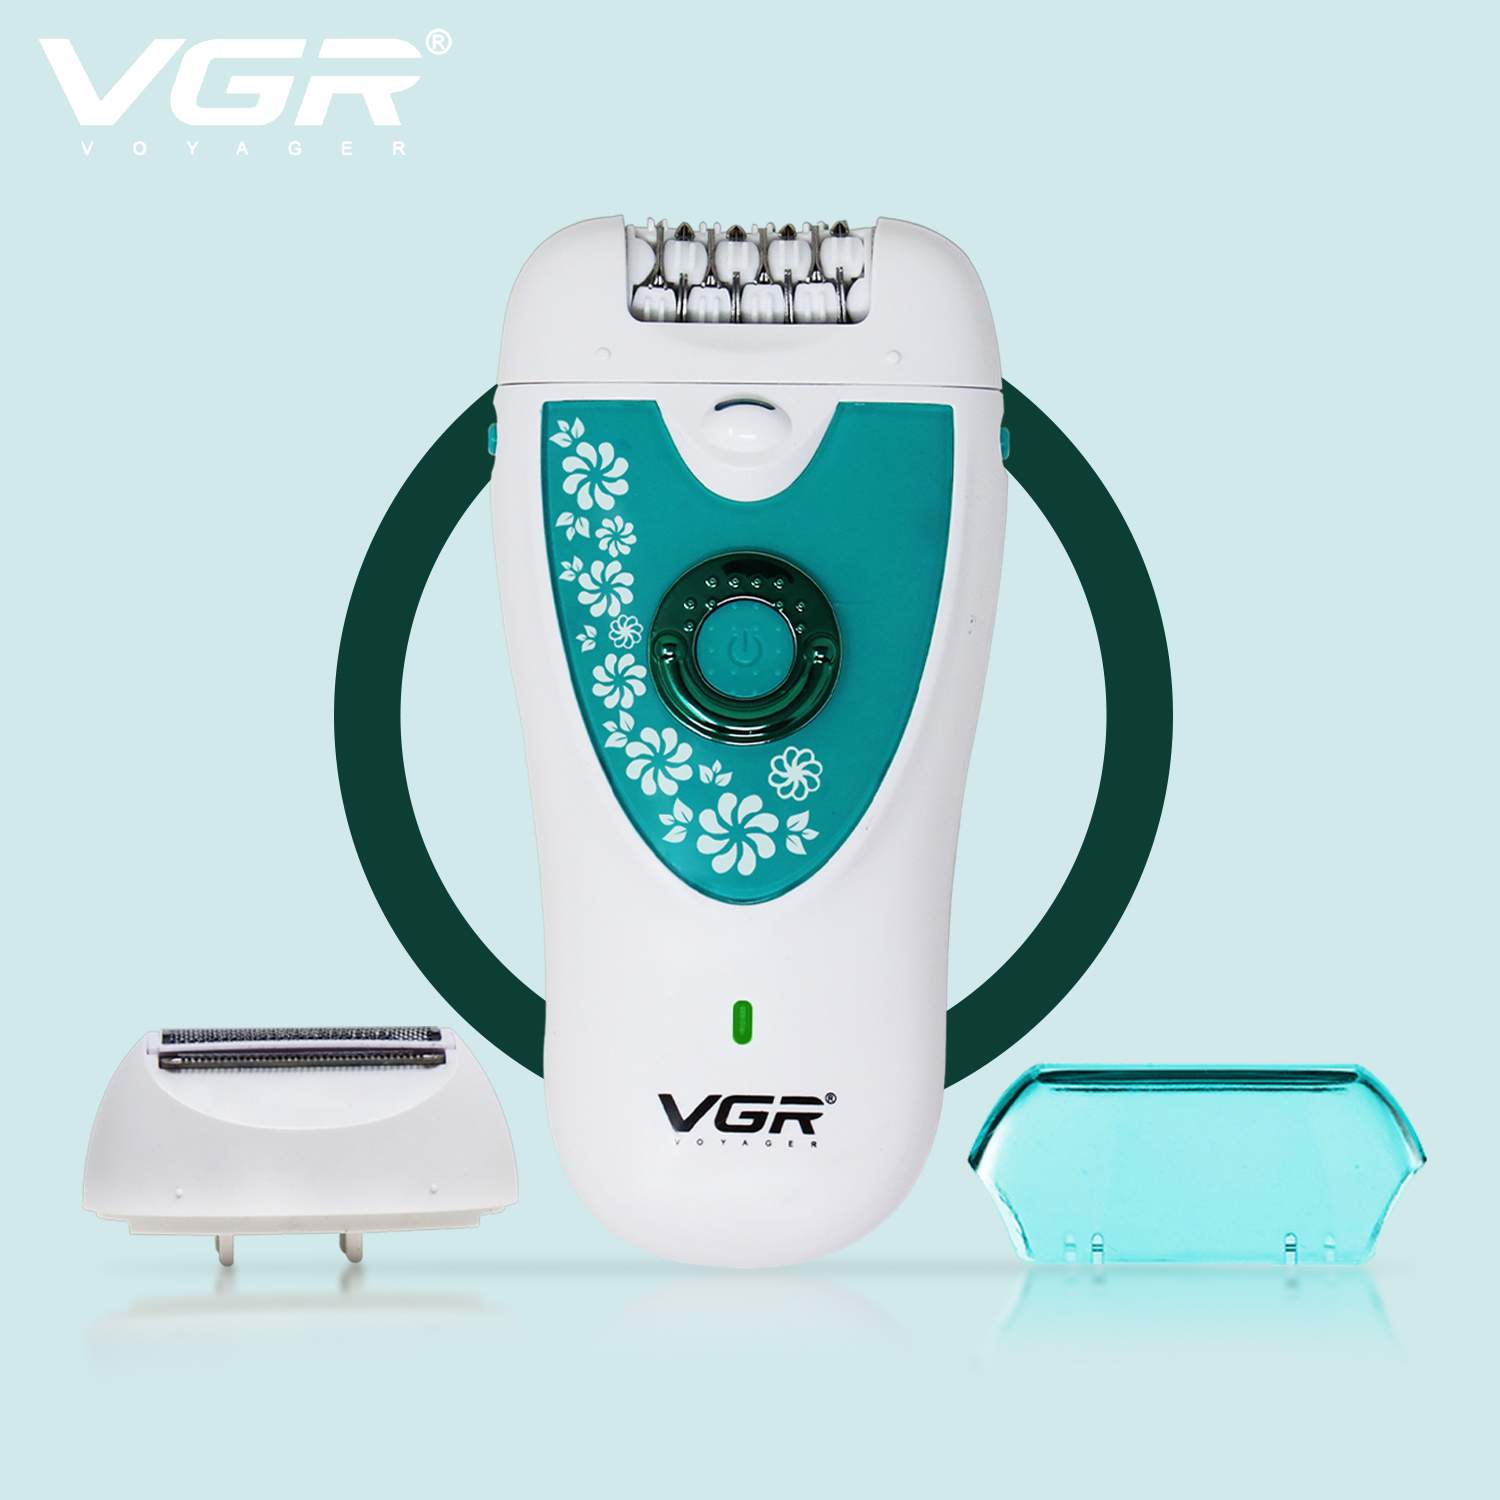 VGR, VGRindia, VGRofficial, VGR V-722